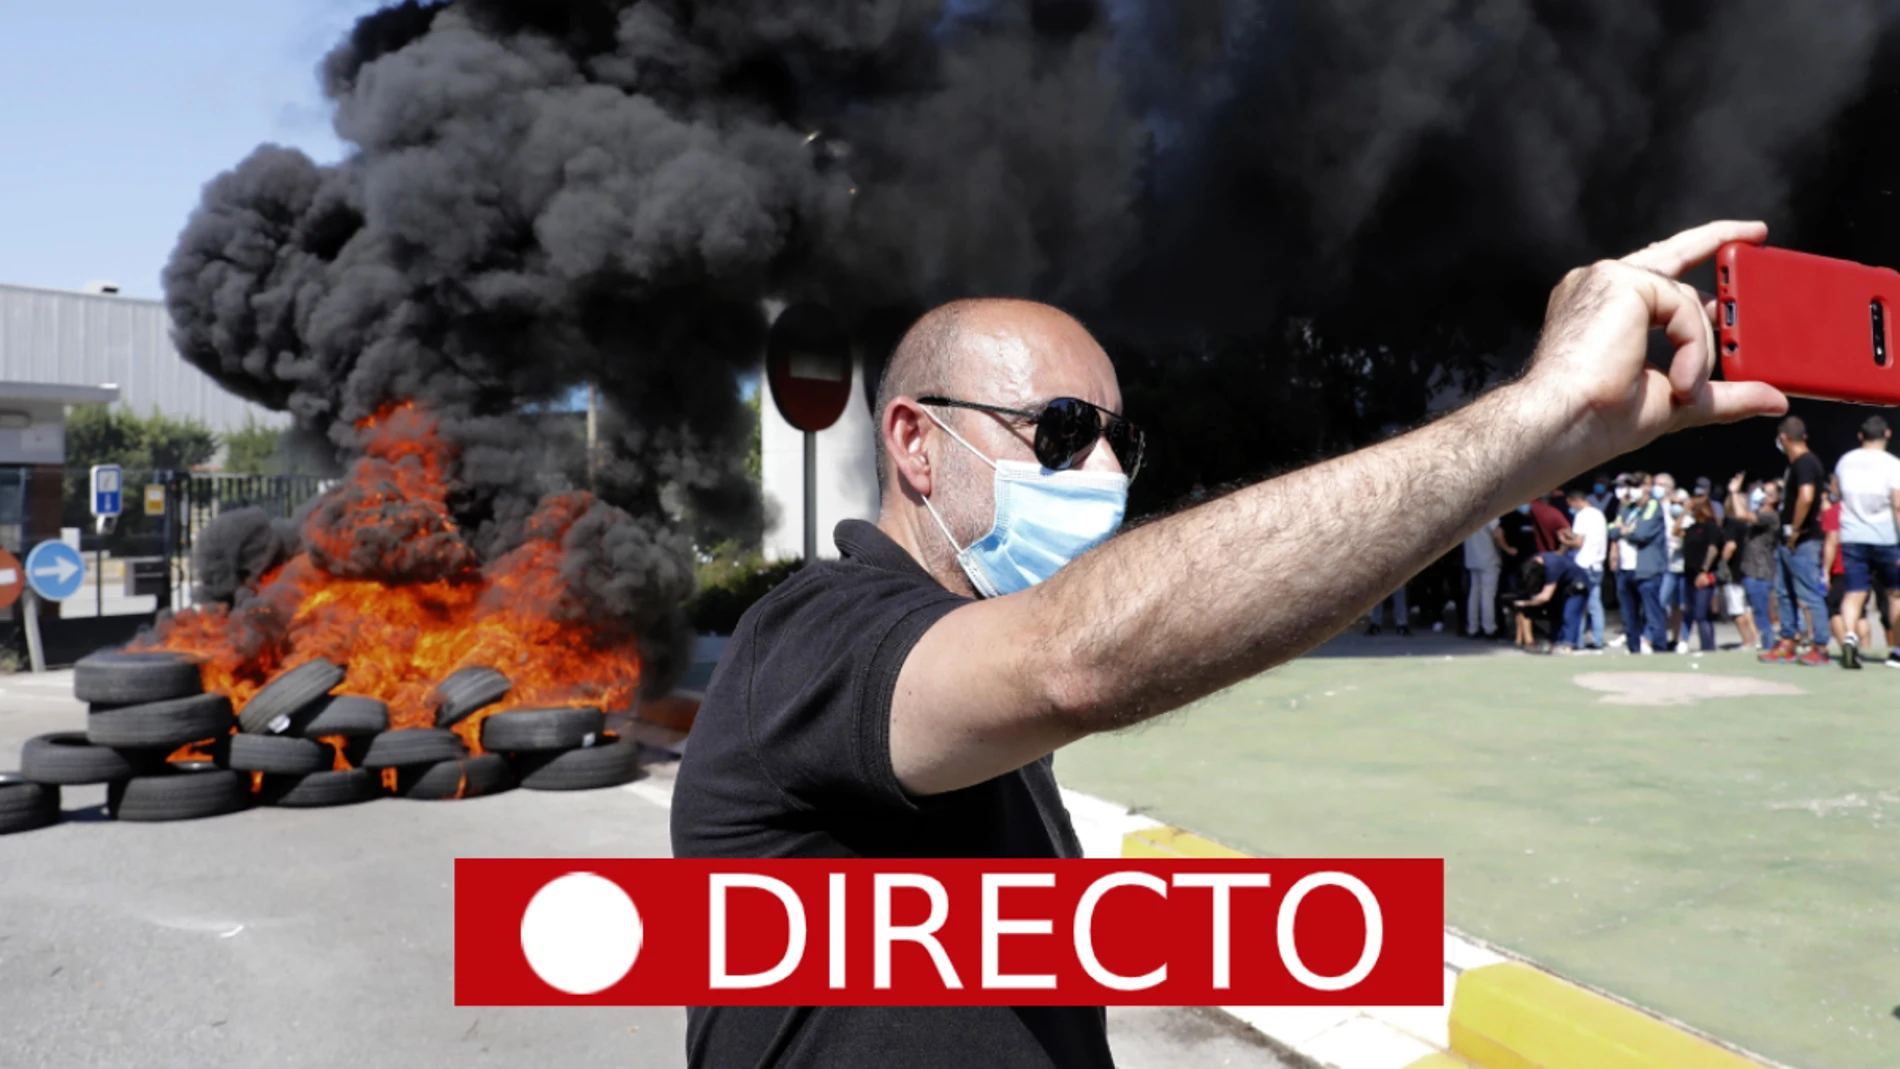 Cierre de la planta de Nissan de Barcelona: corte de carreteras y barricadas, en directo